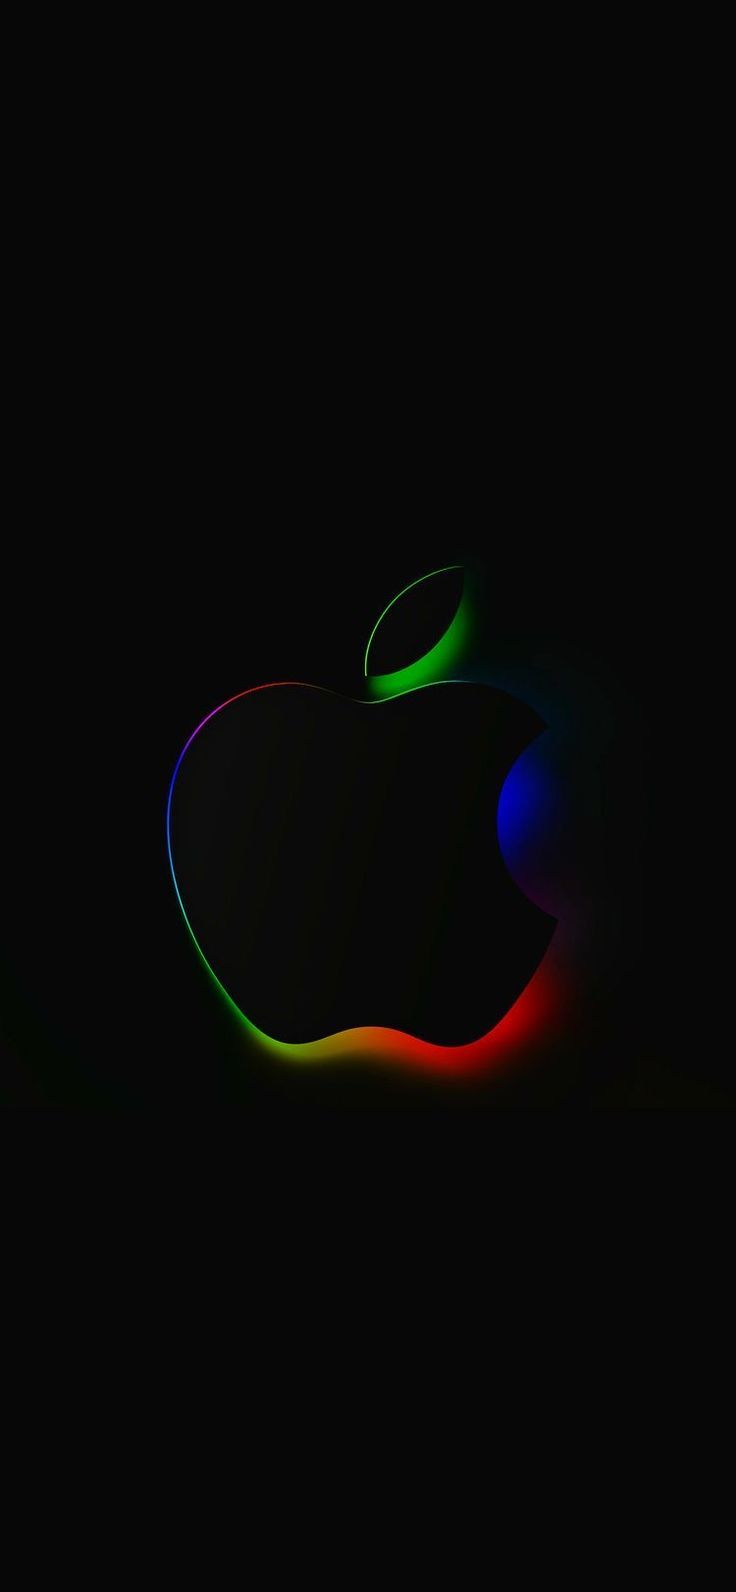 Apple Logo++. Apple wallpaper, Apple logo wallpaper iphone, Apple wall. Apple wallpaper, Apple wallpaper iphone, Apple logo wallpaper iphone